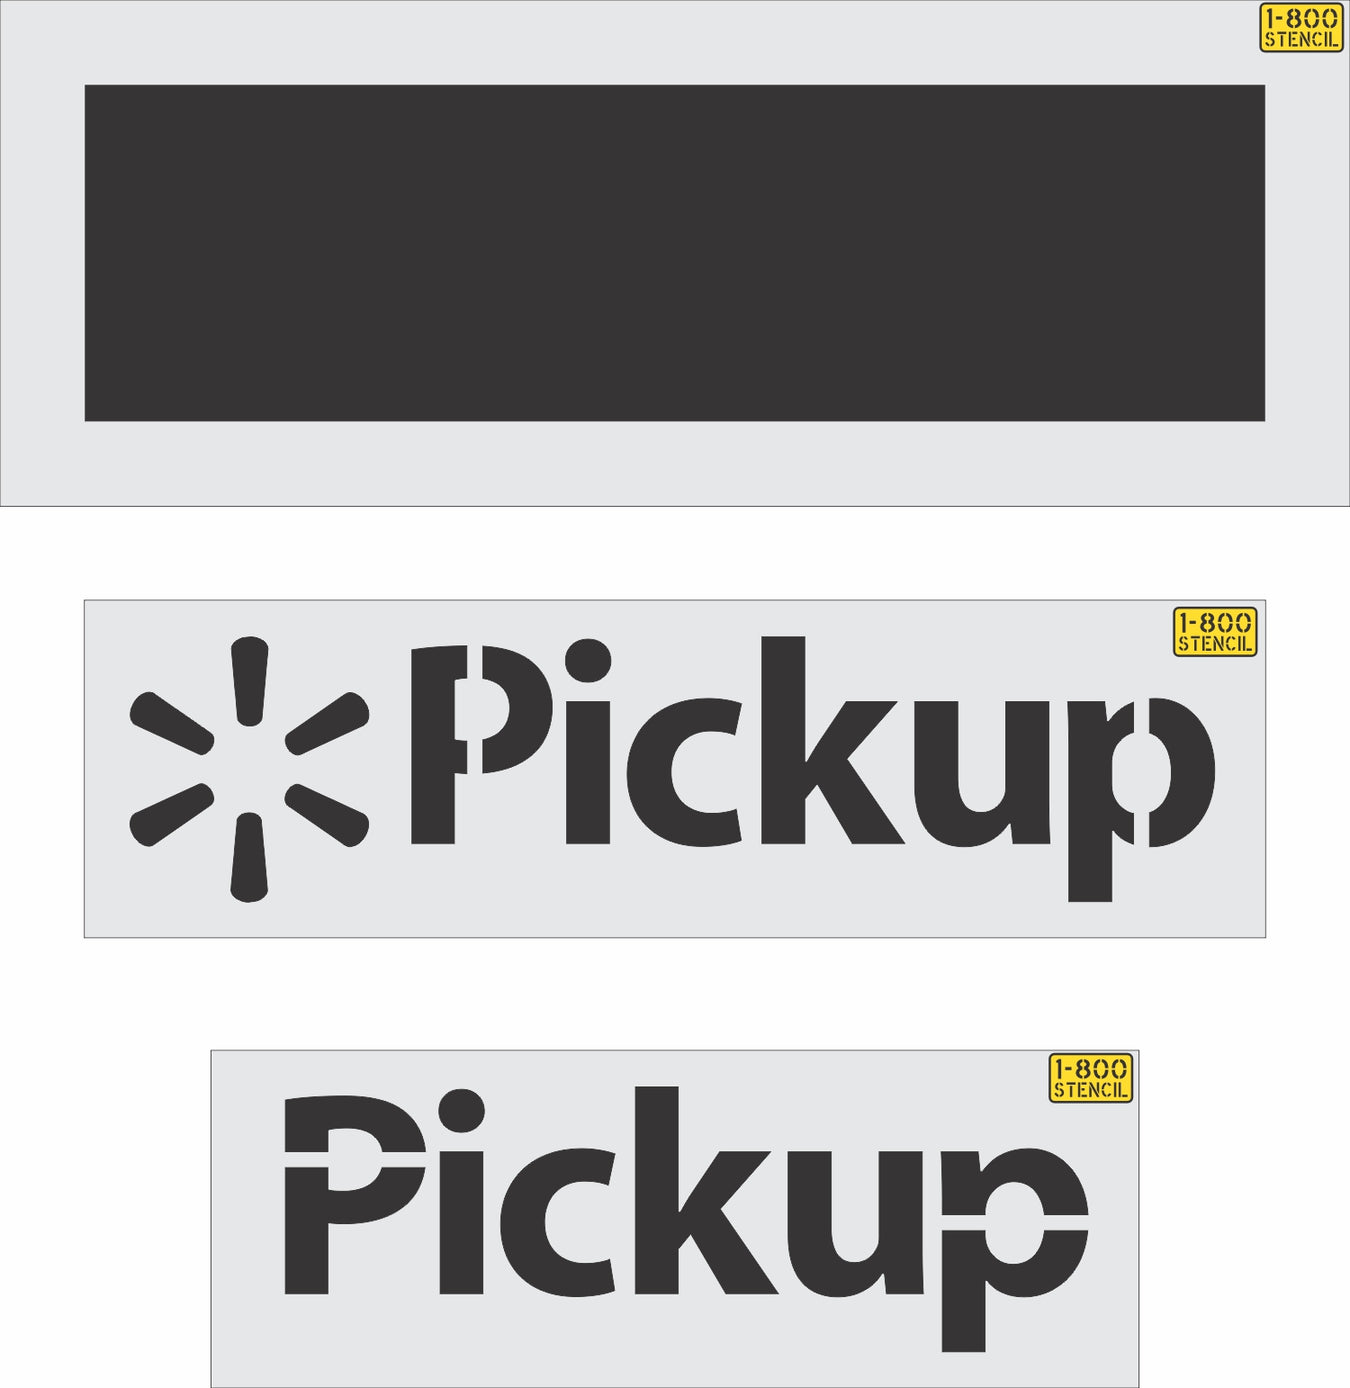 Retail Chain Wording Stencils